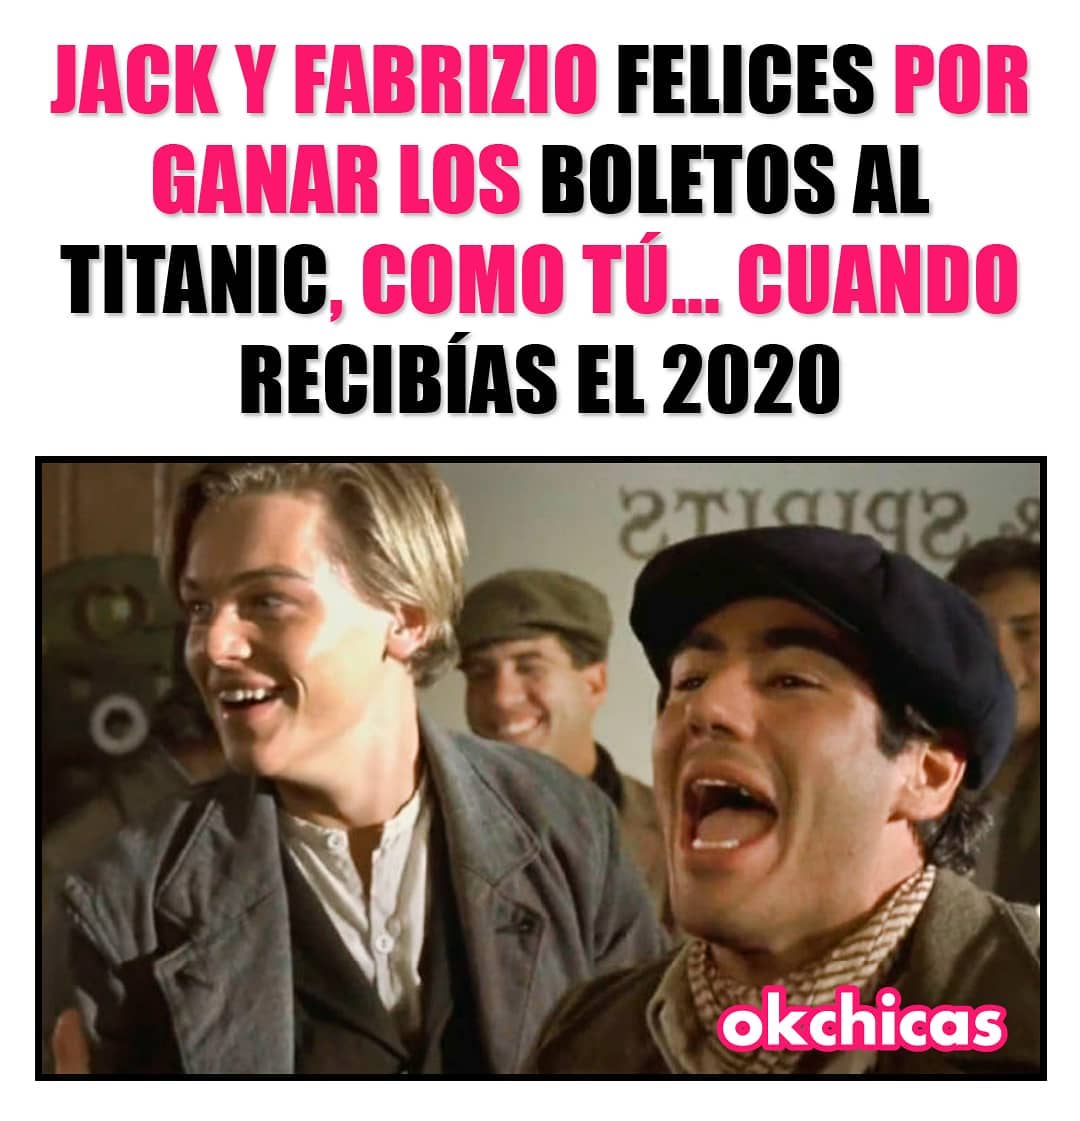 Jack y Fabrizio felices por ganar los boletos al titanic, como tú cuando recibías el 2020.